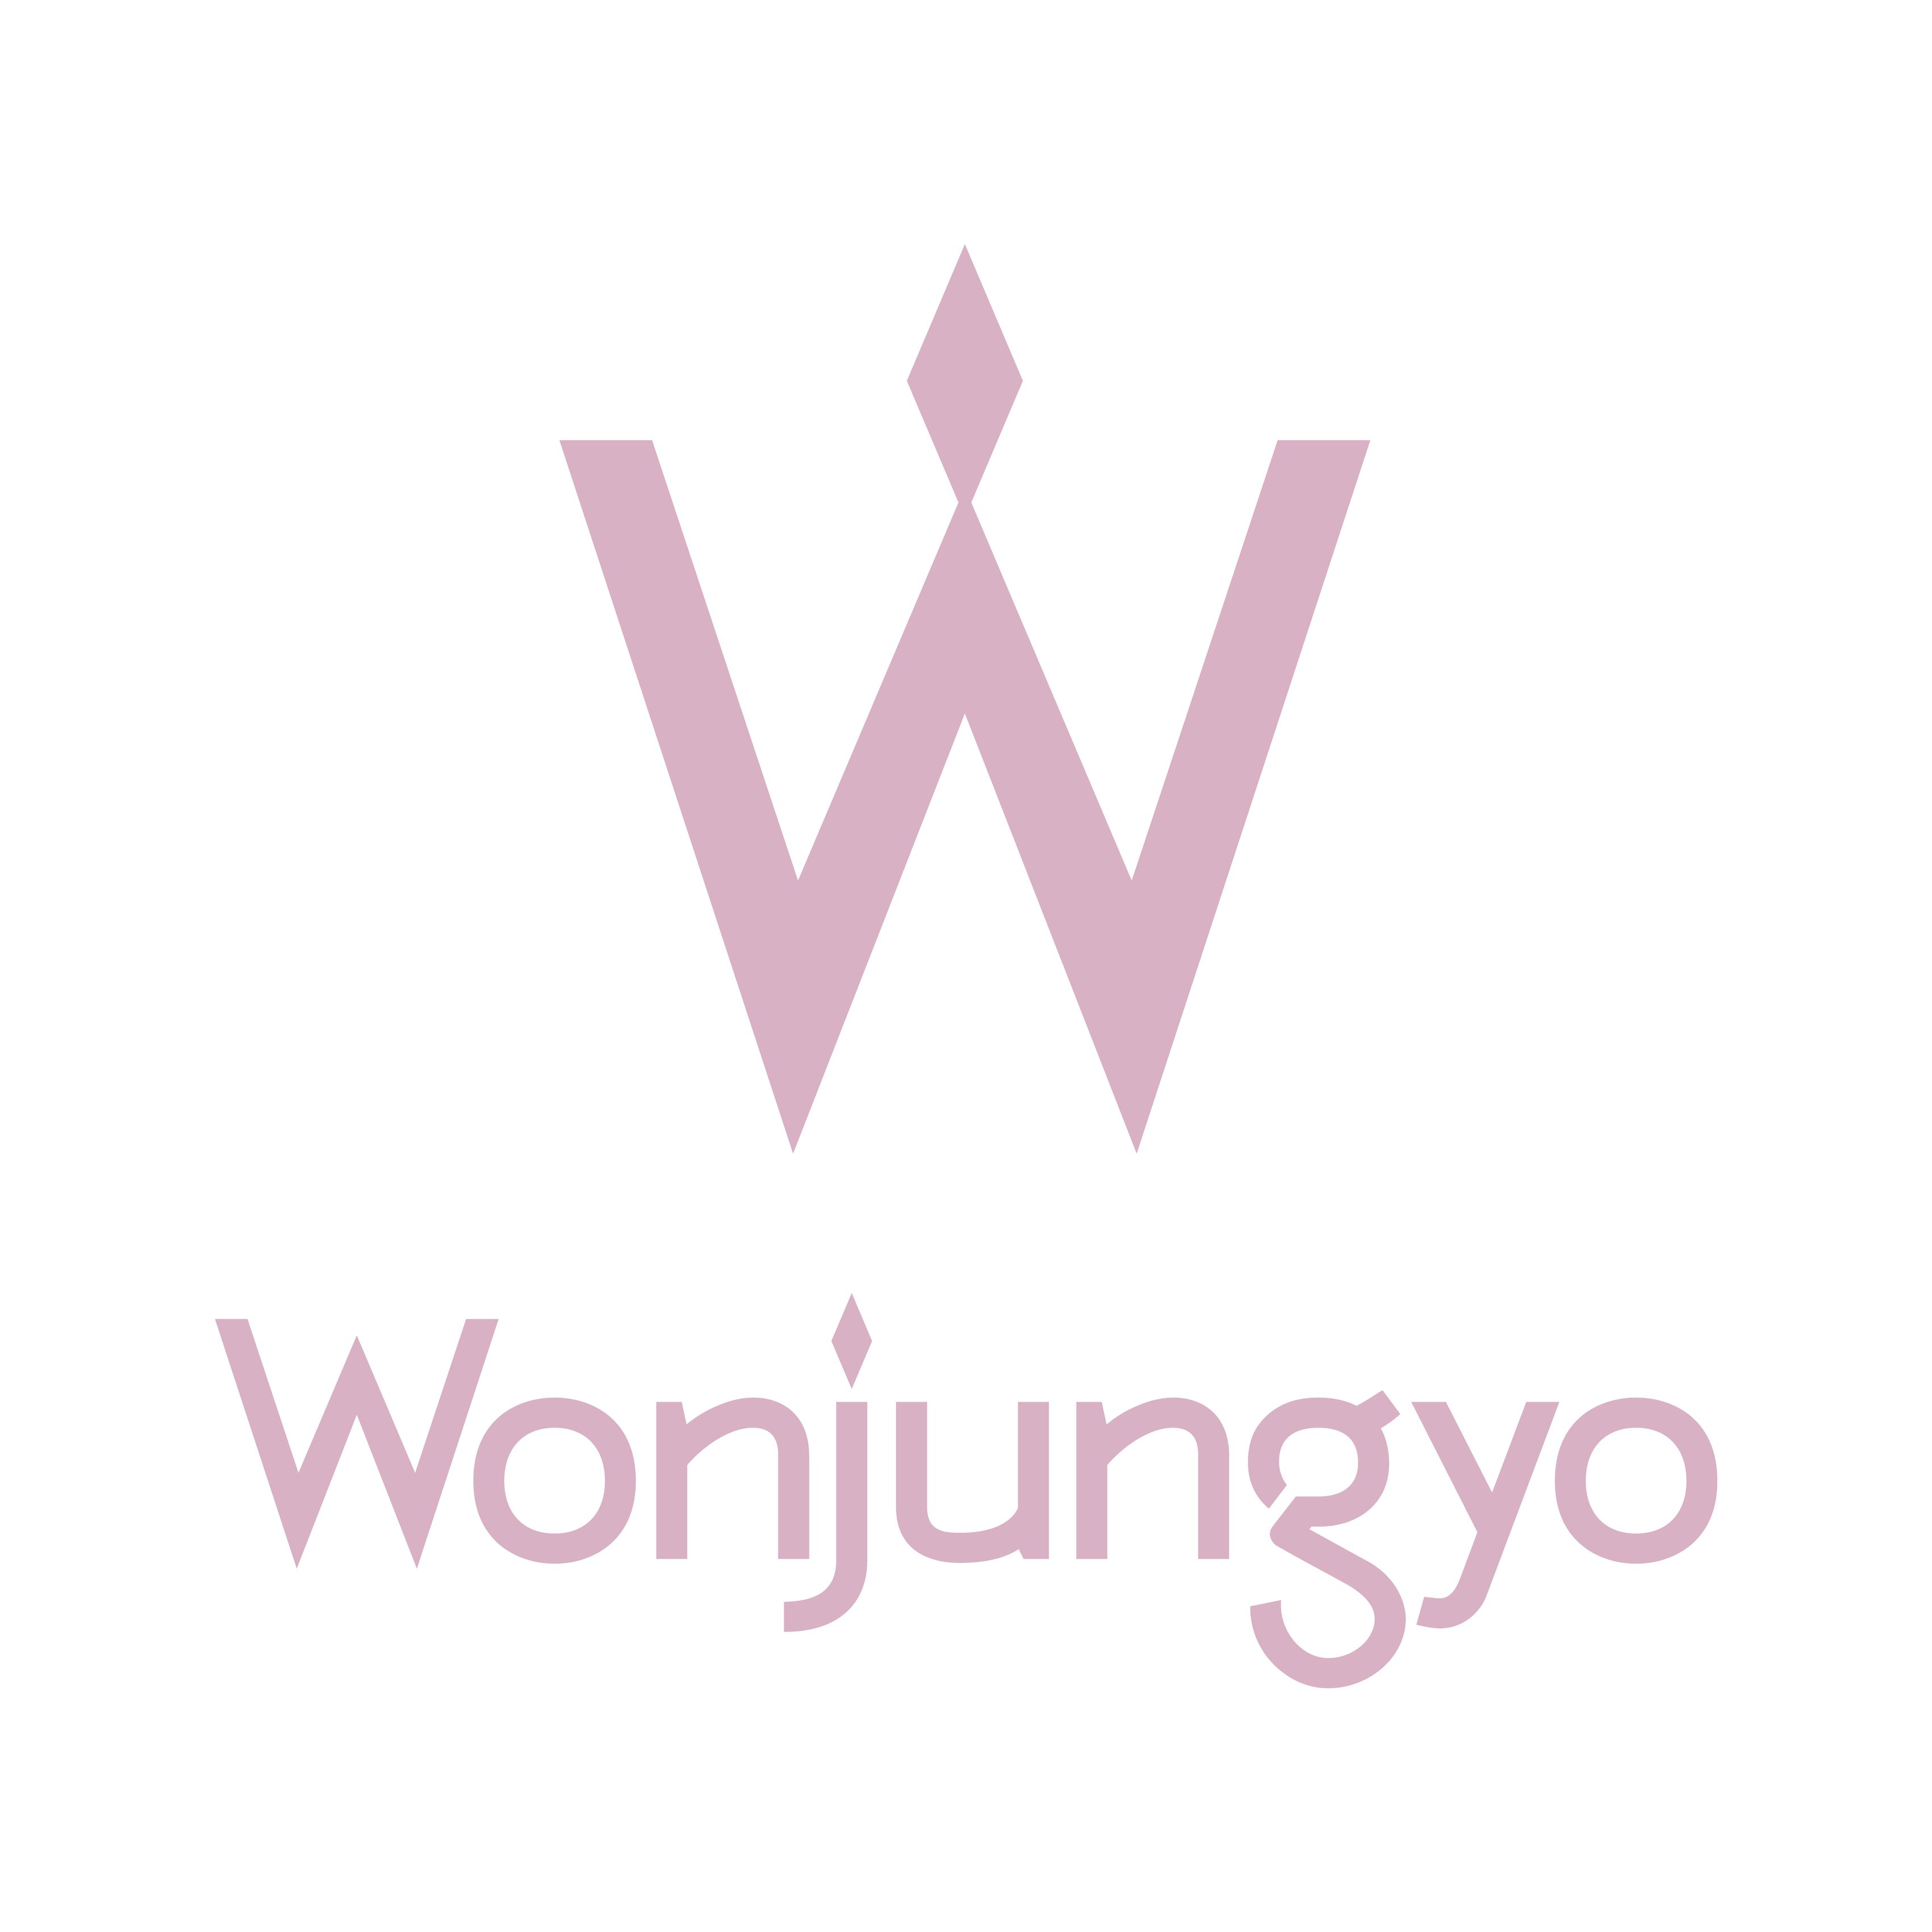 【話題のTWICEメイク】涙袋メイクの第一人者“ウォン・ジョンヨ”監修のコスメブランド「Wonjungyo」公式TikTokアカウントを開設　#Z世代Pick